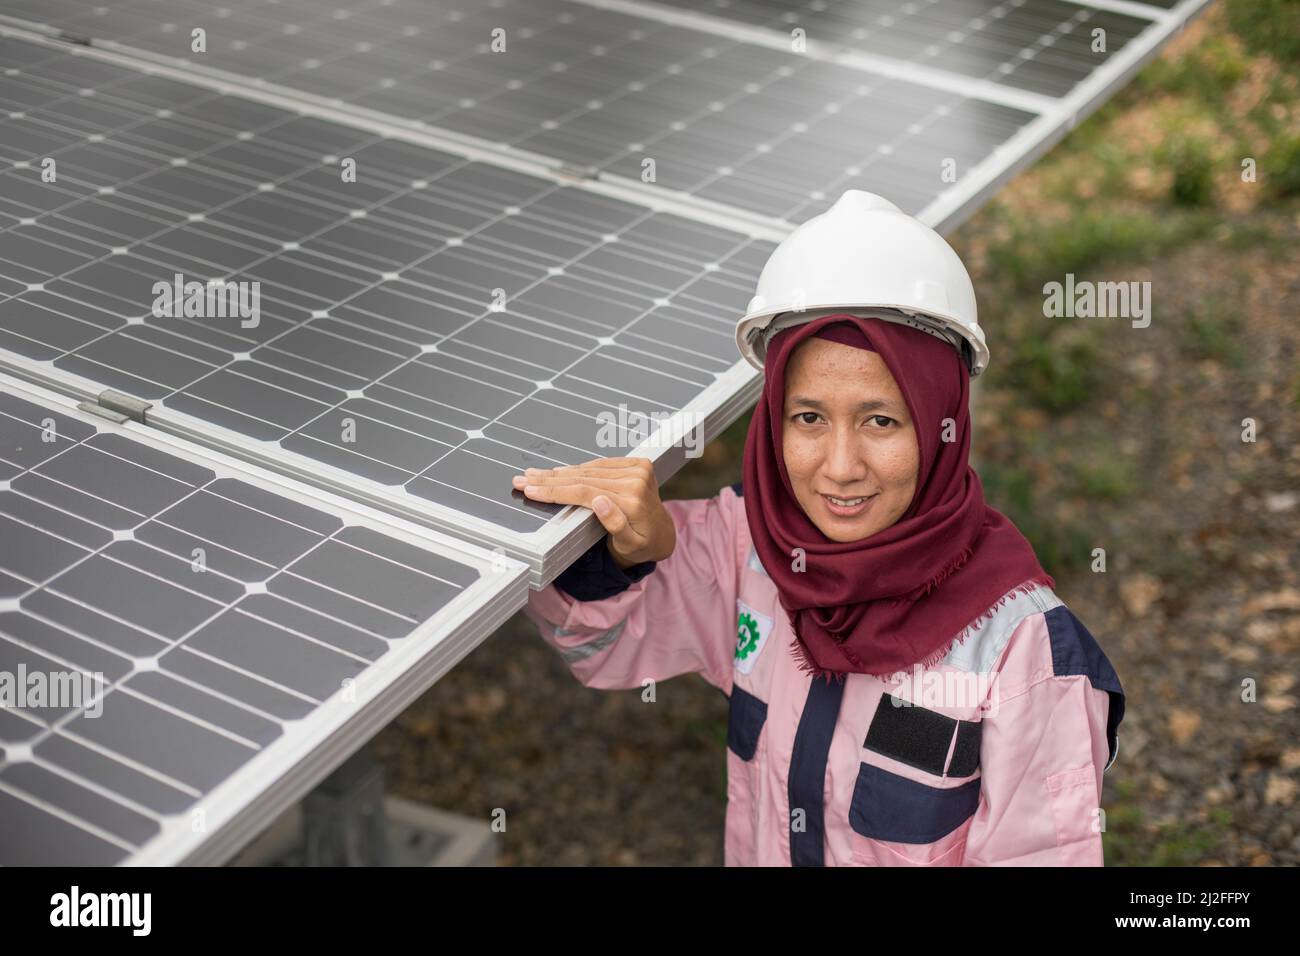 Un técnico eléctrico subalterno, Verawati (23 años), inspecciona y mantiene paneles solares en la isla de Karampuang, Indonesia, que se instalaron como parte del sistema Foto de stock